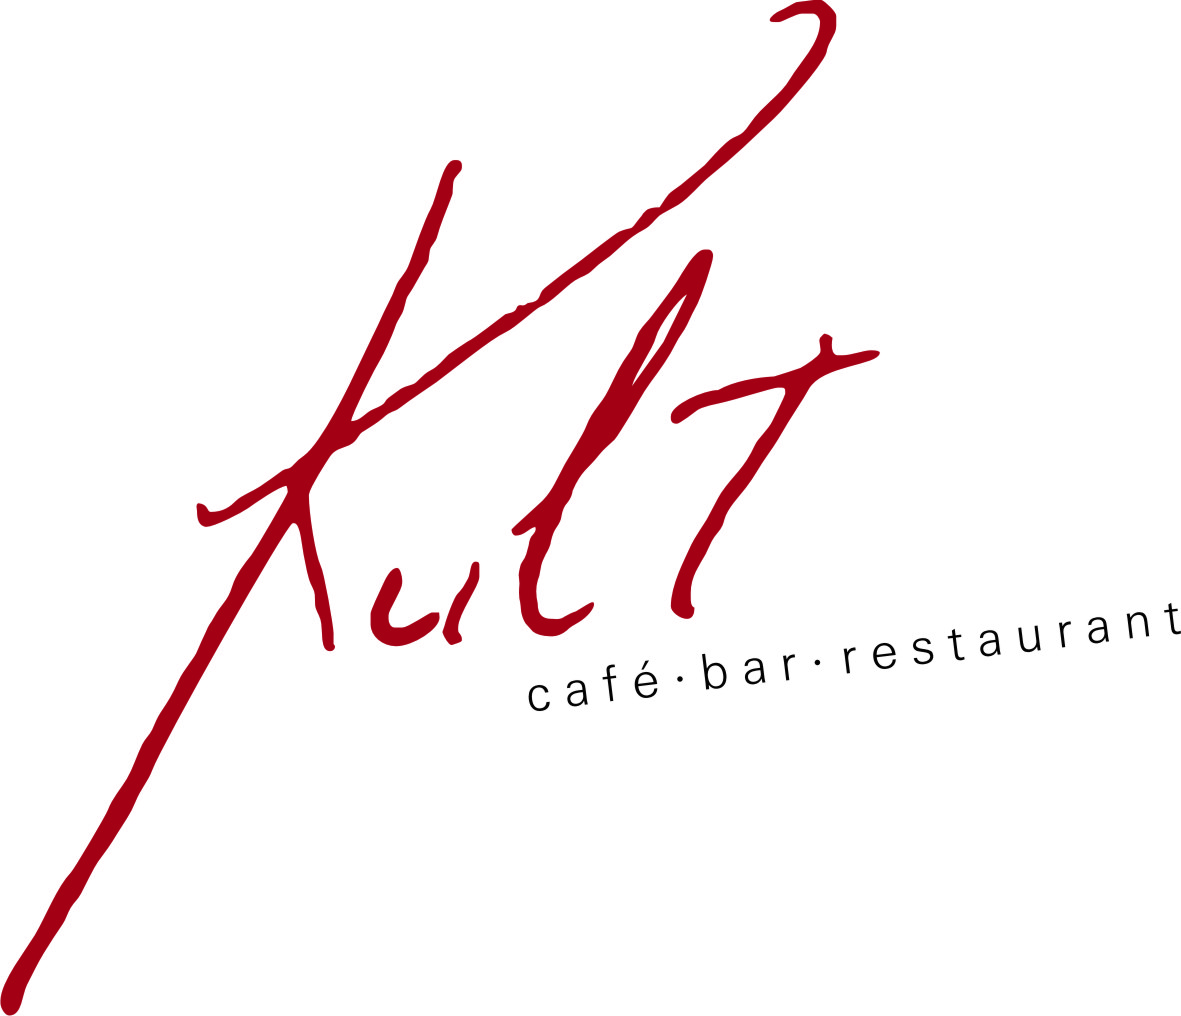 Cafe Kult